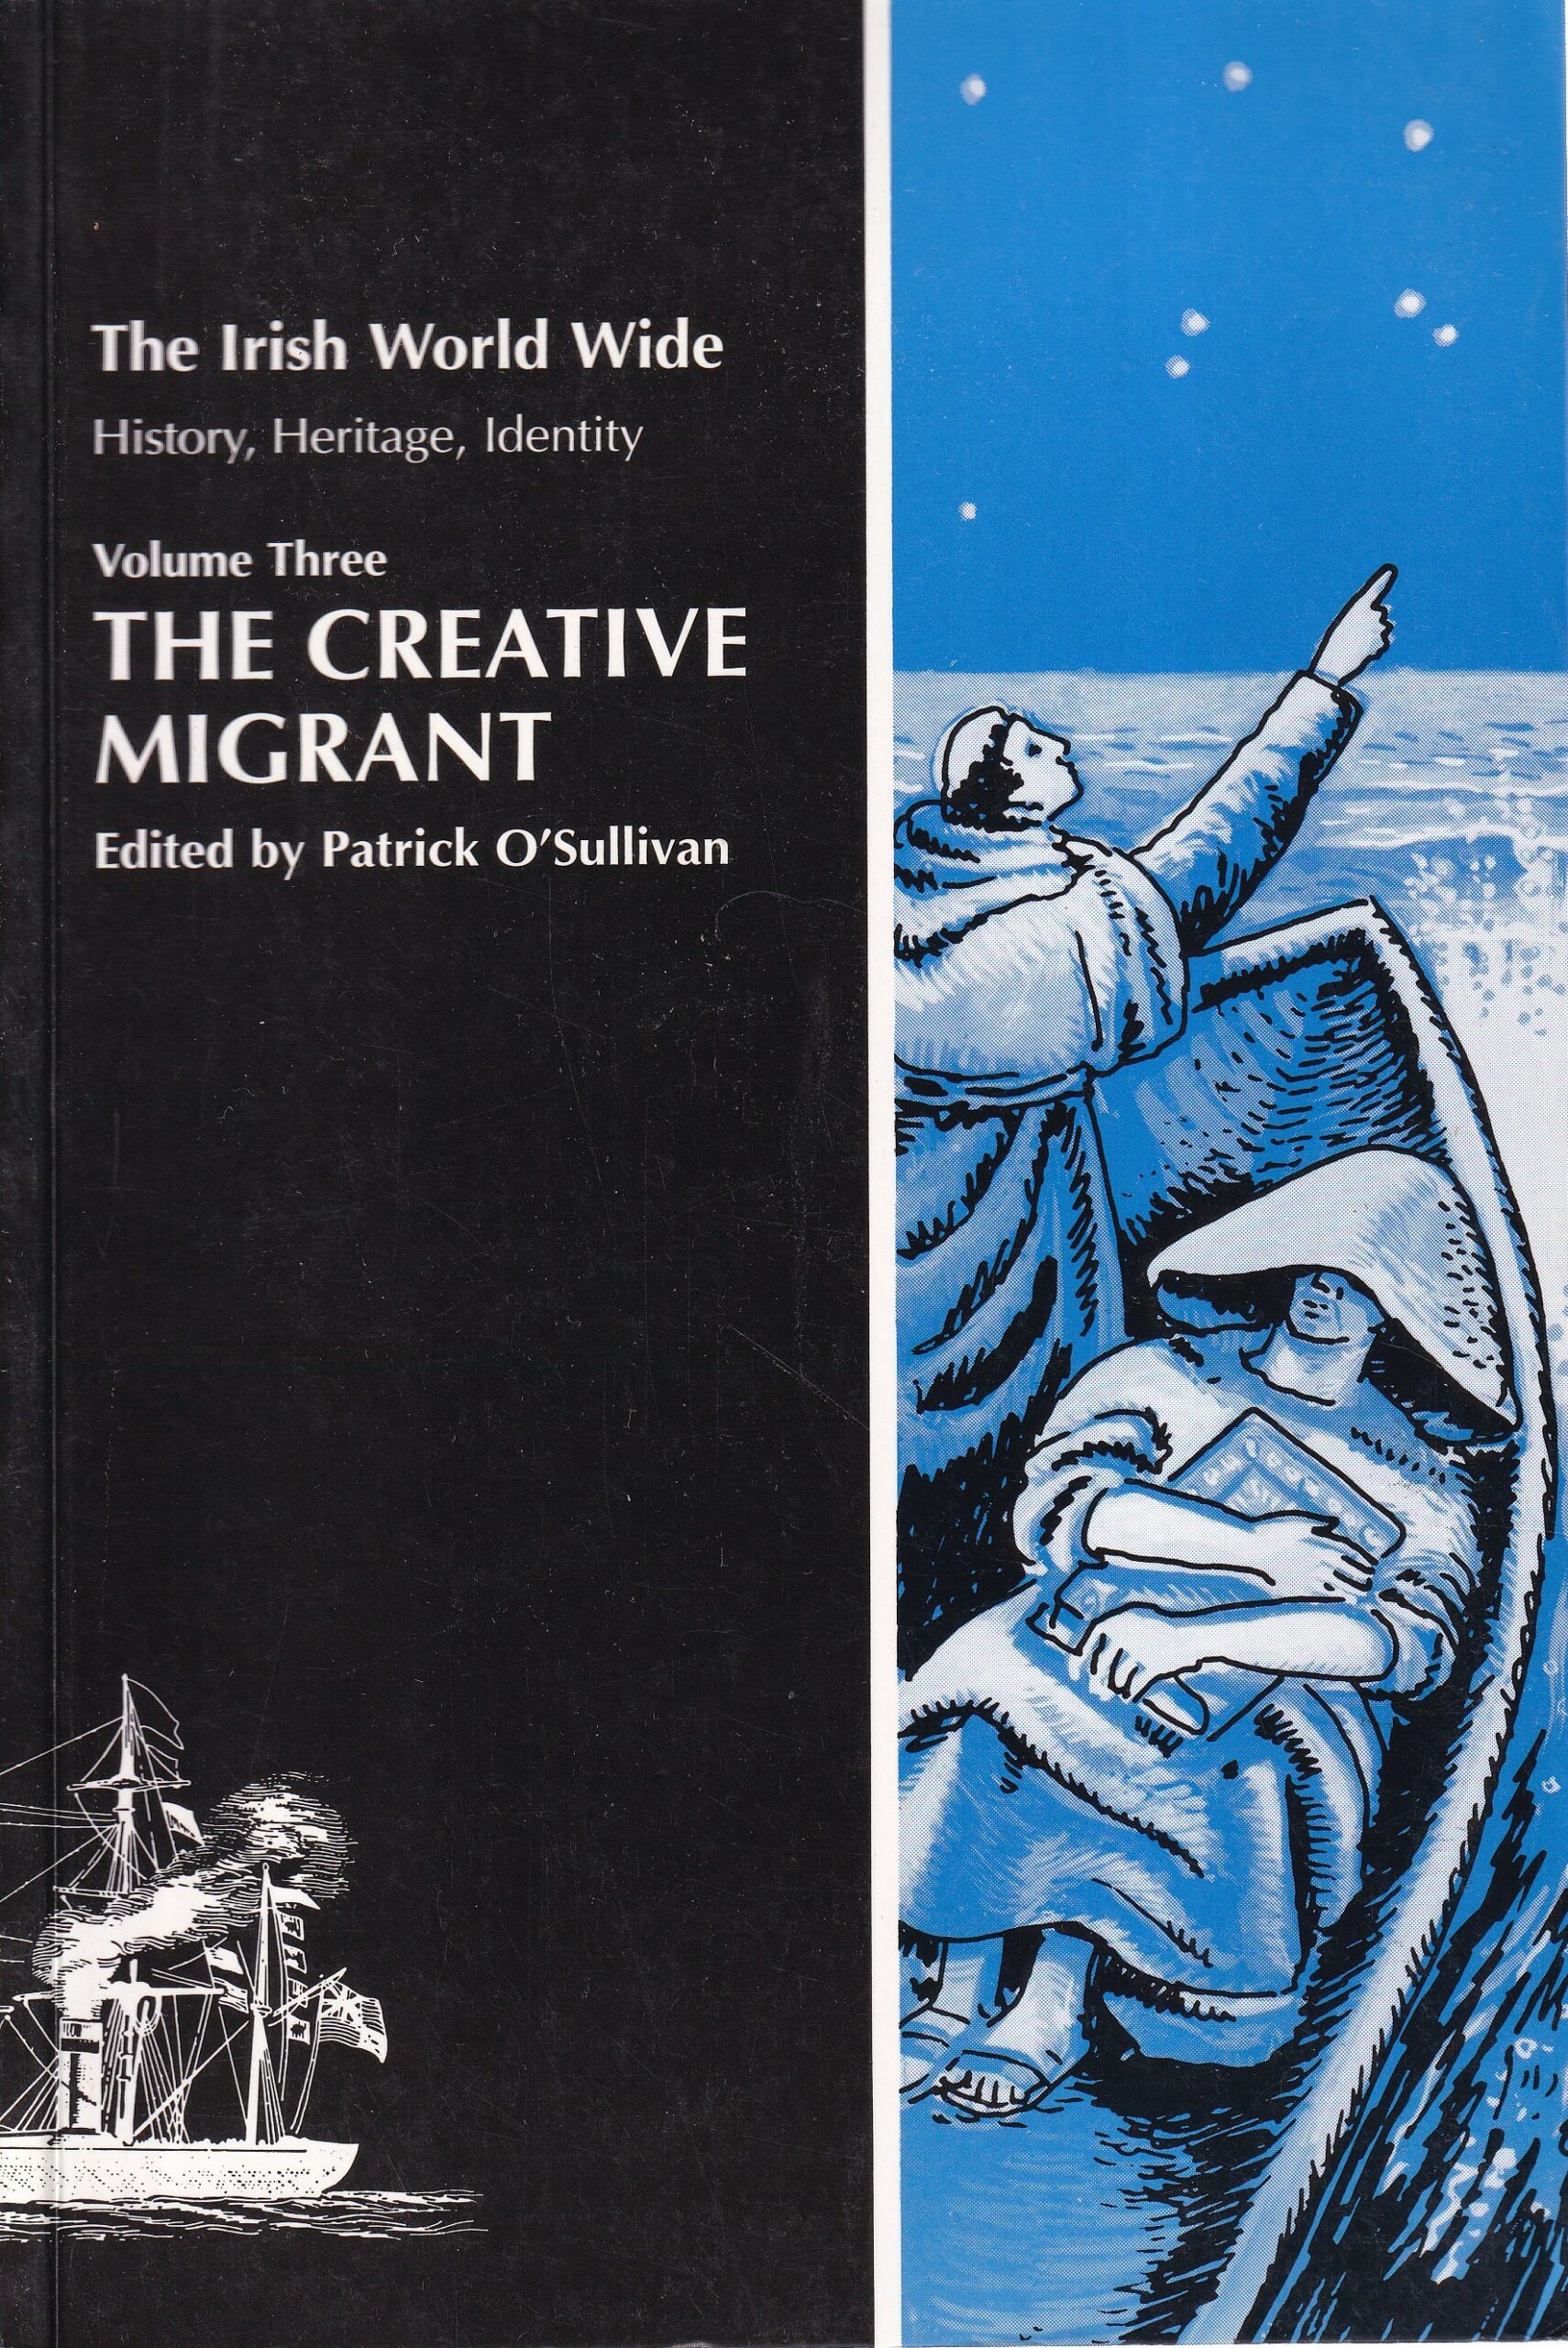 The Creative Migrant: The Irish World Wide Vol lll by Patrick O'Sullivan (ed.)